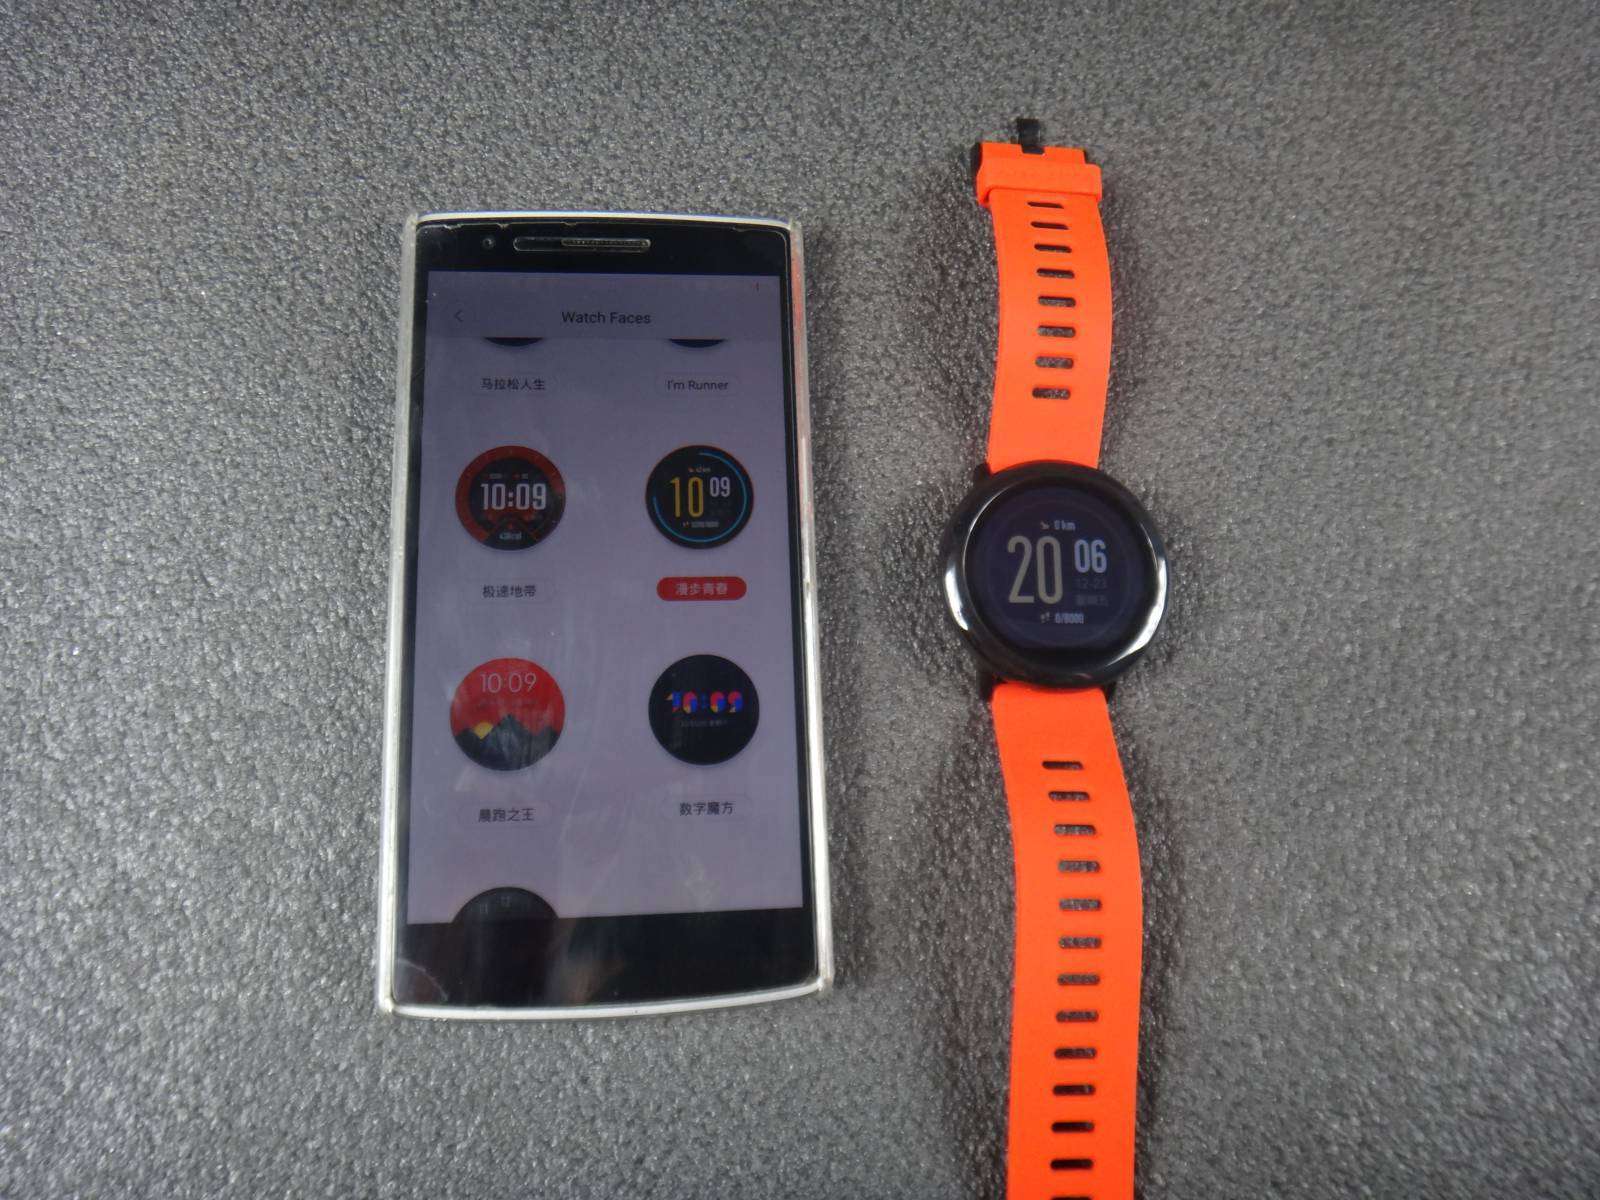 GearBest: Xiaomi AMAZFIT умные часы с продвинутым функционалом и различными уведомлениями